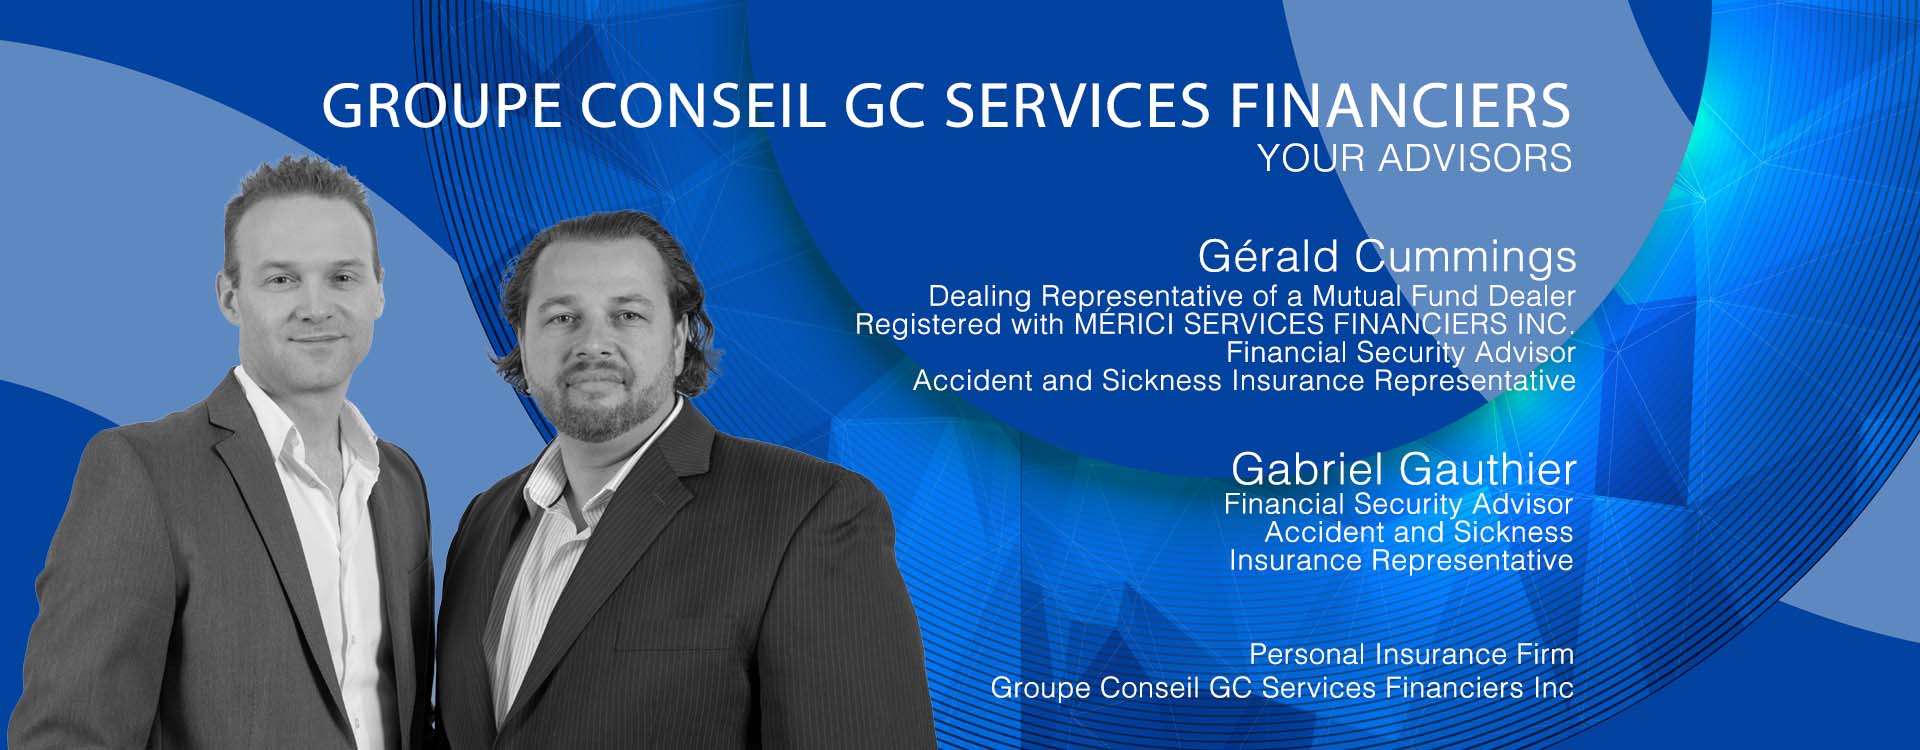 gc-services-financier-header